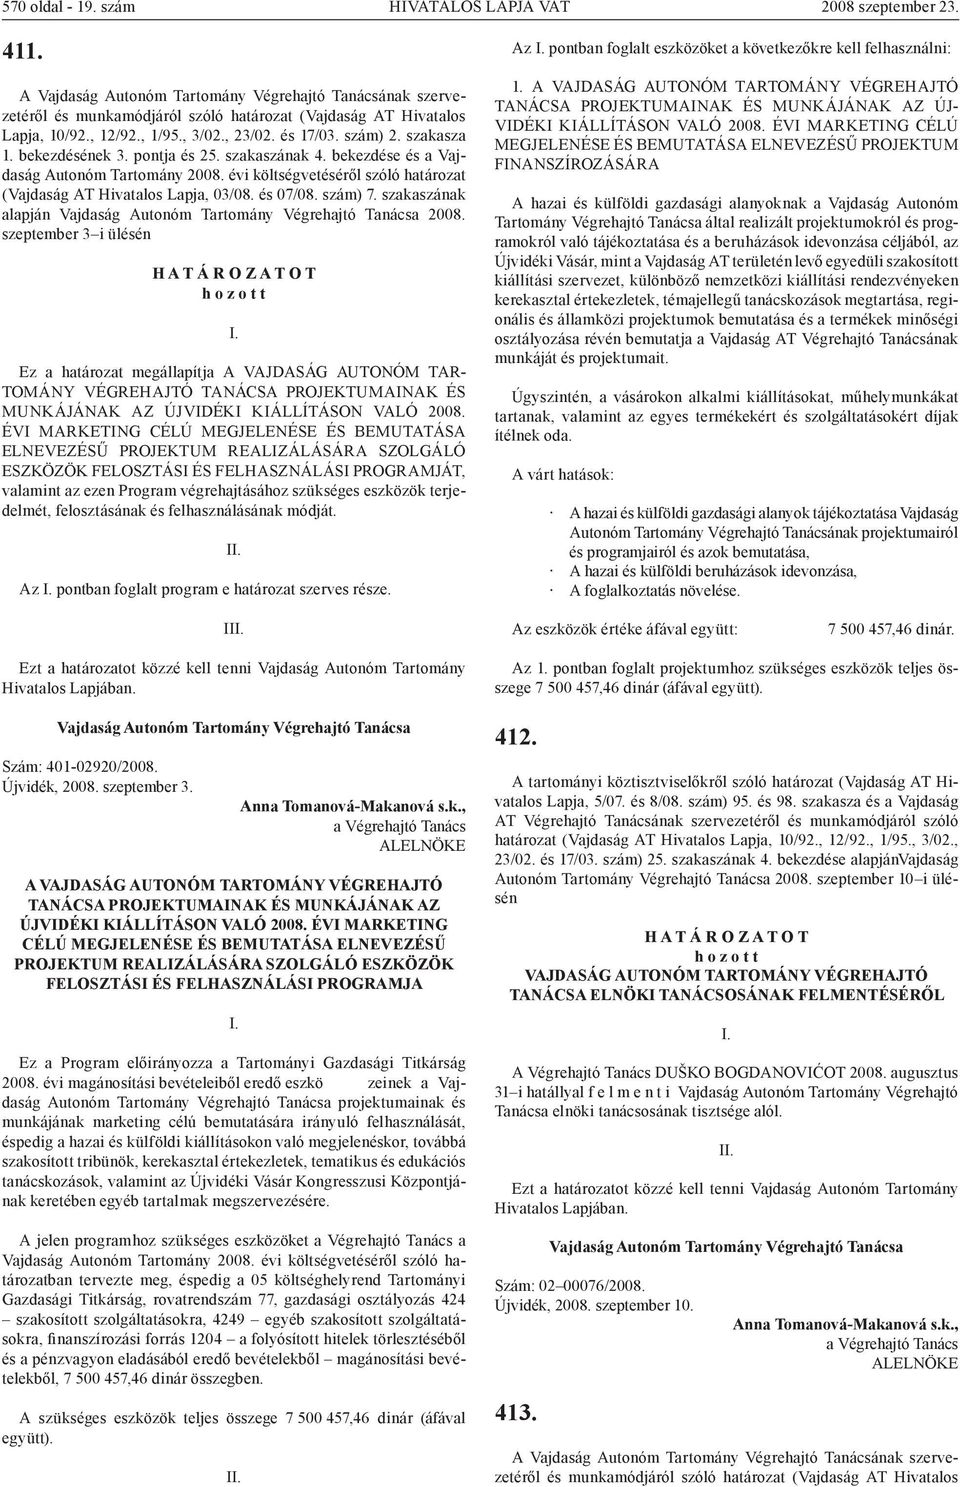 évi költségvetéséről szóló határozat (Vajdaság AT Hivatalos Lapja, 03/08. és 07/08. szám) 7. szakaszának alapján 2008.